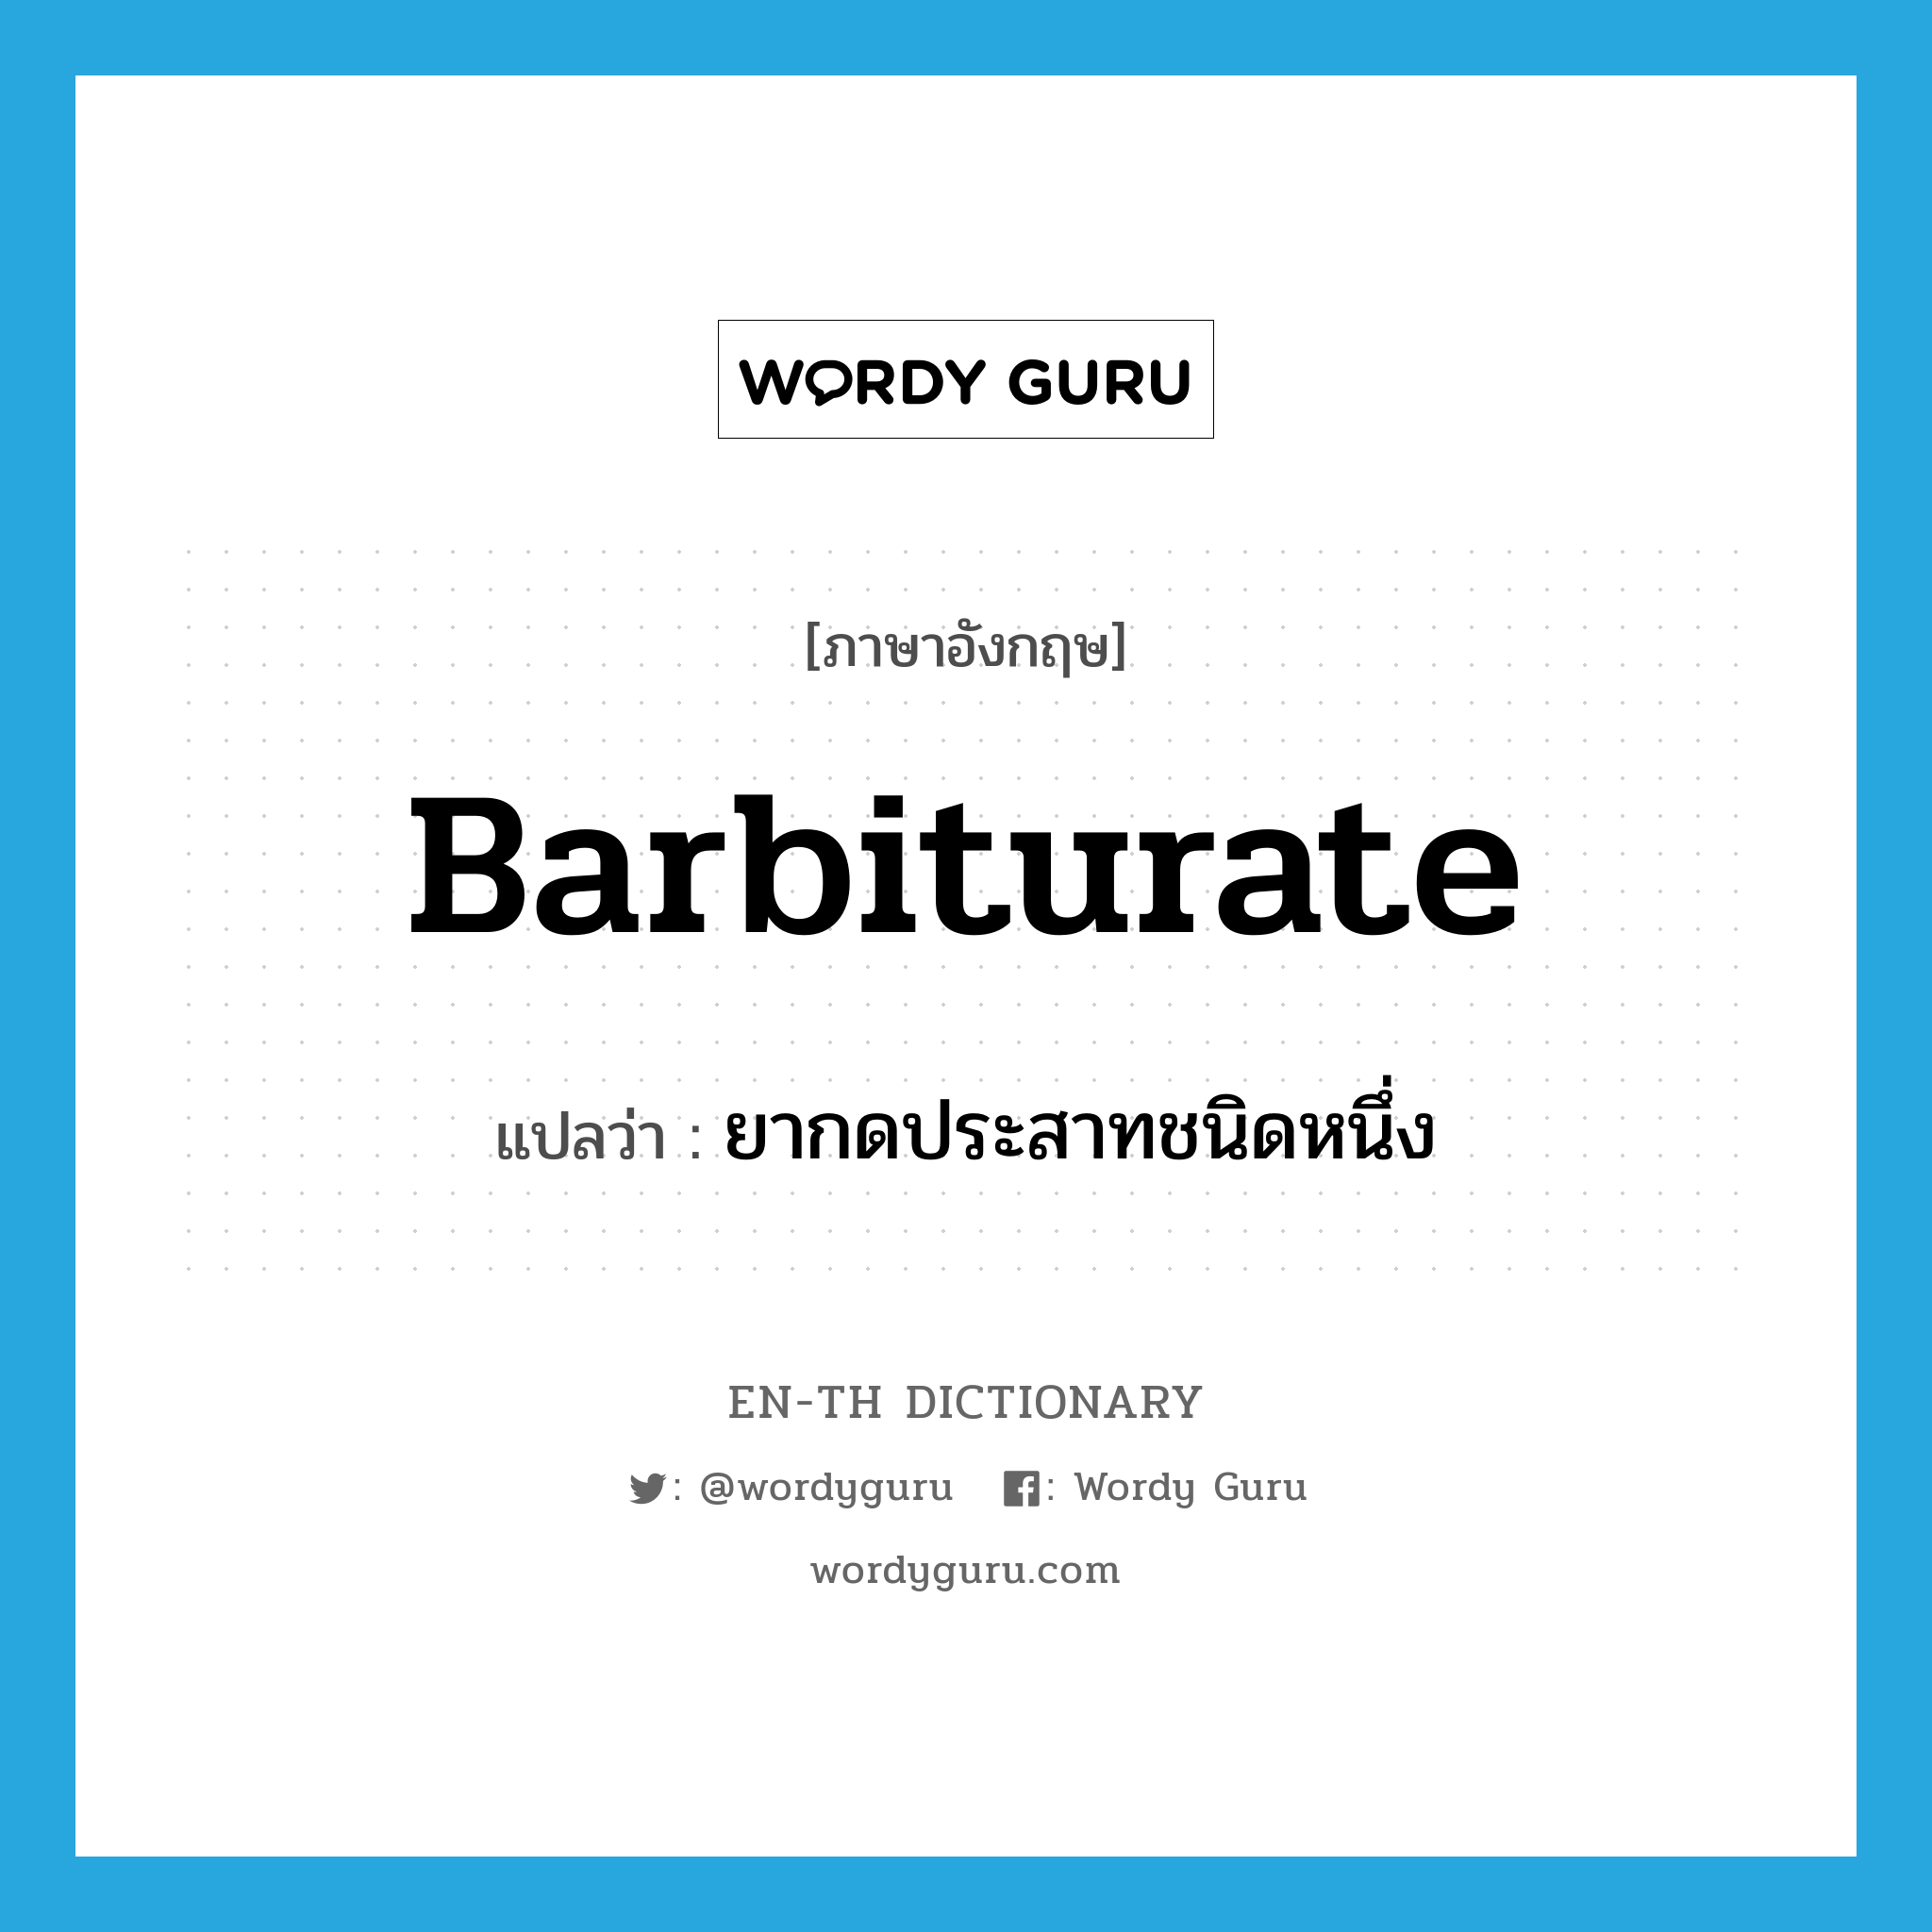 barbiturate แปลว่า?, คำศัพท์ภาษาอังกฤษ barbiturate แปลว่า ยากดประสาทชนิดหนึ่ง ประเภท N หมวด N